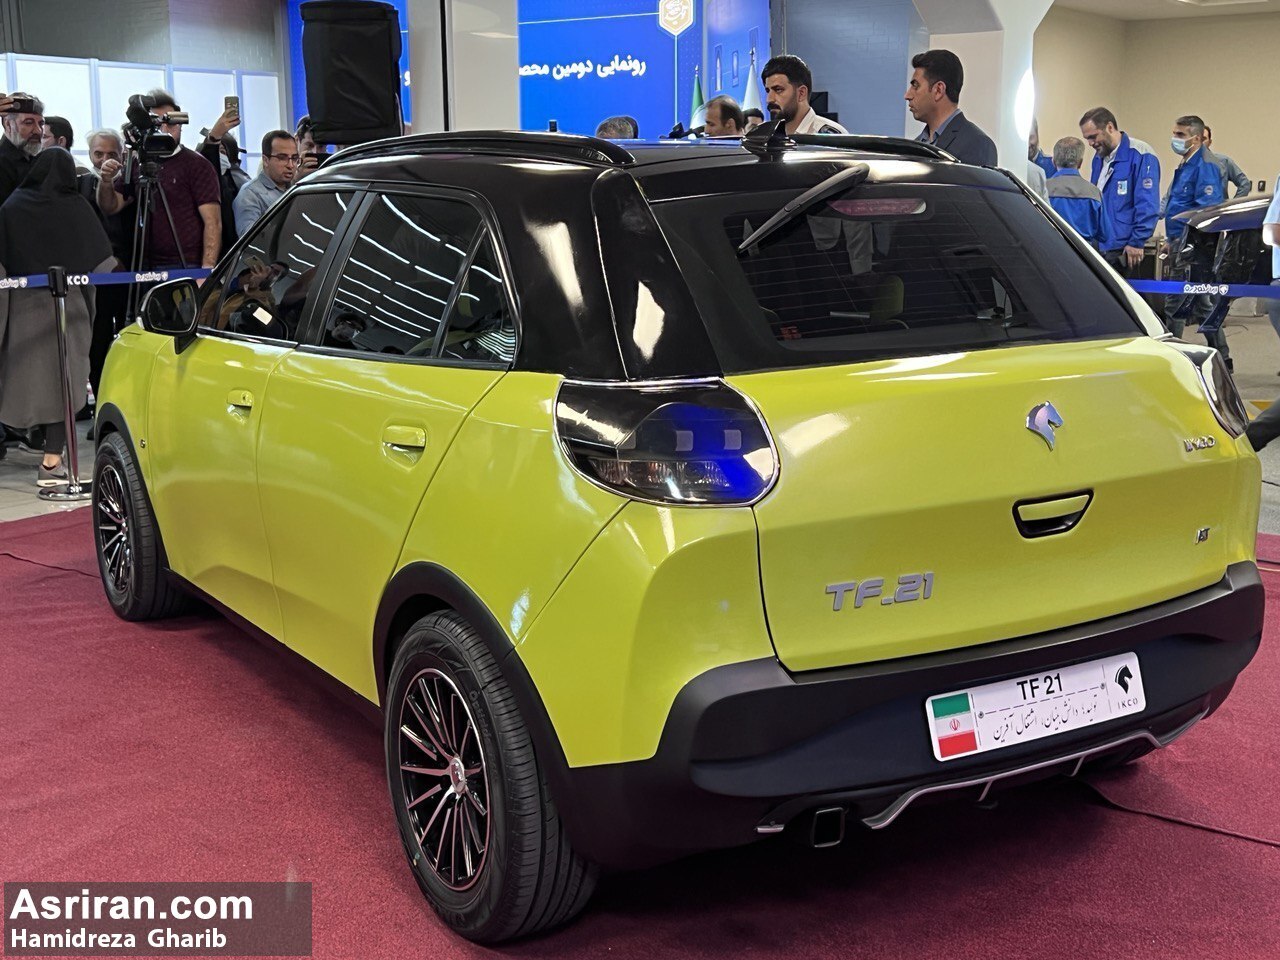 ایران خودرو: تولید پژو ۲۰۶ متوقف می شود / 2 خودرو جایگزین معرفی شدند (+عکس، فیلم و مشخصات خودروهای جایگزین)